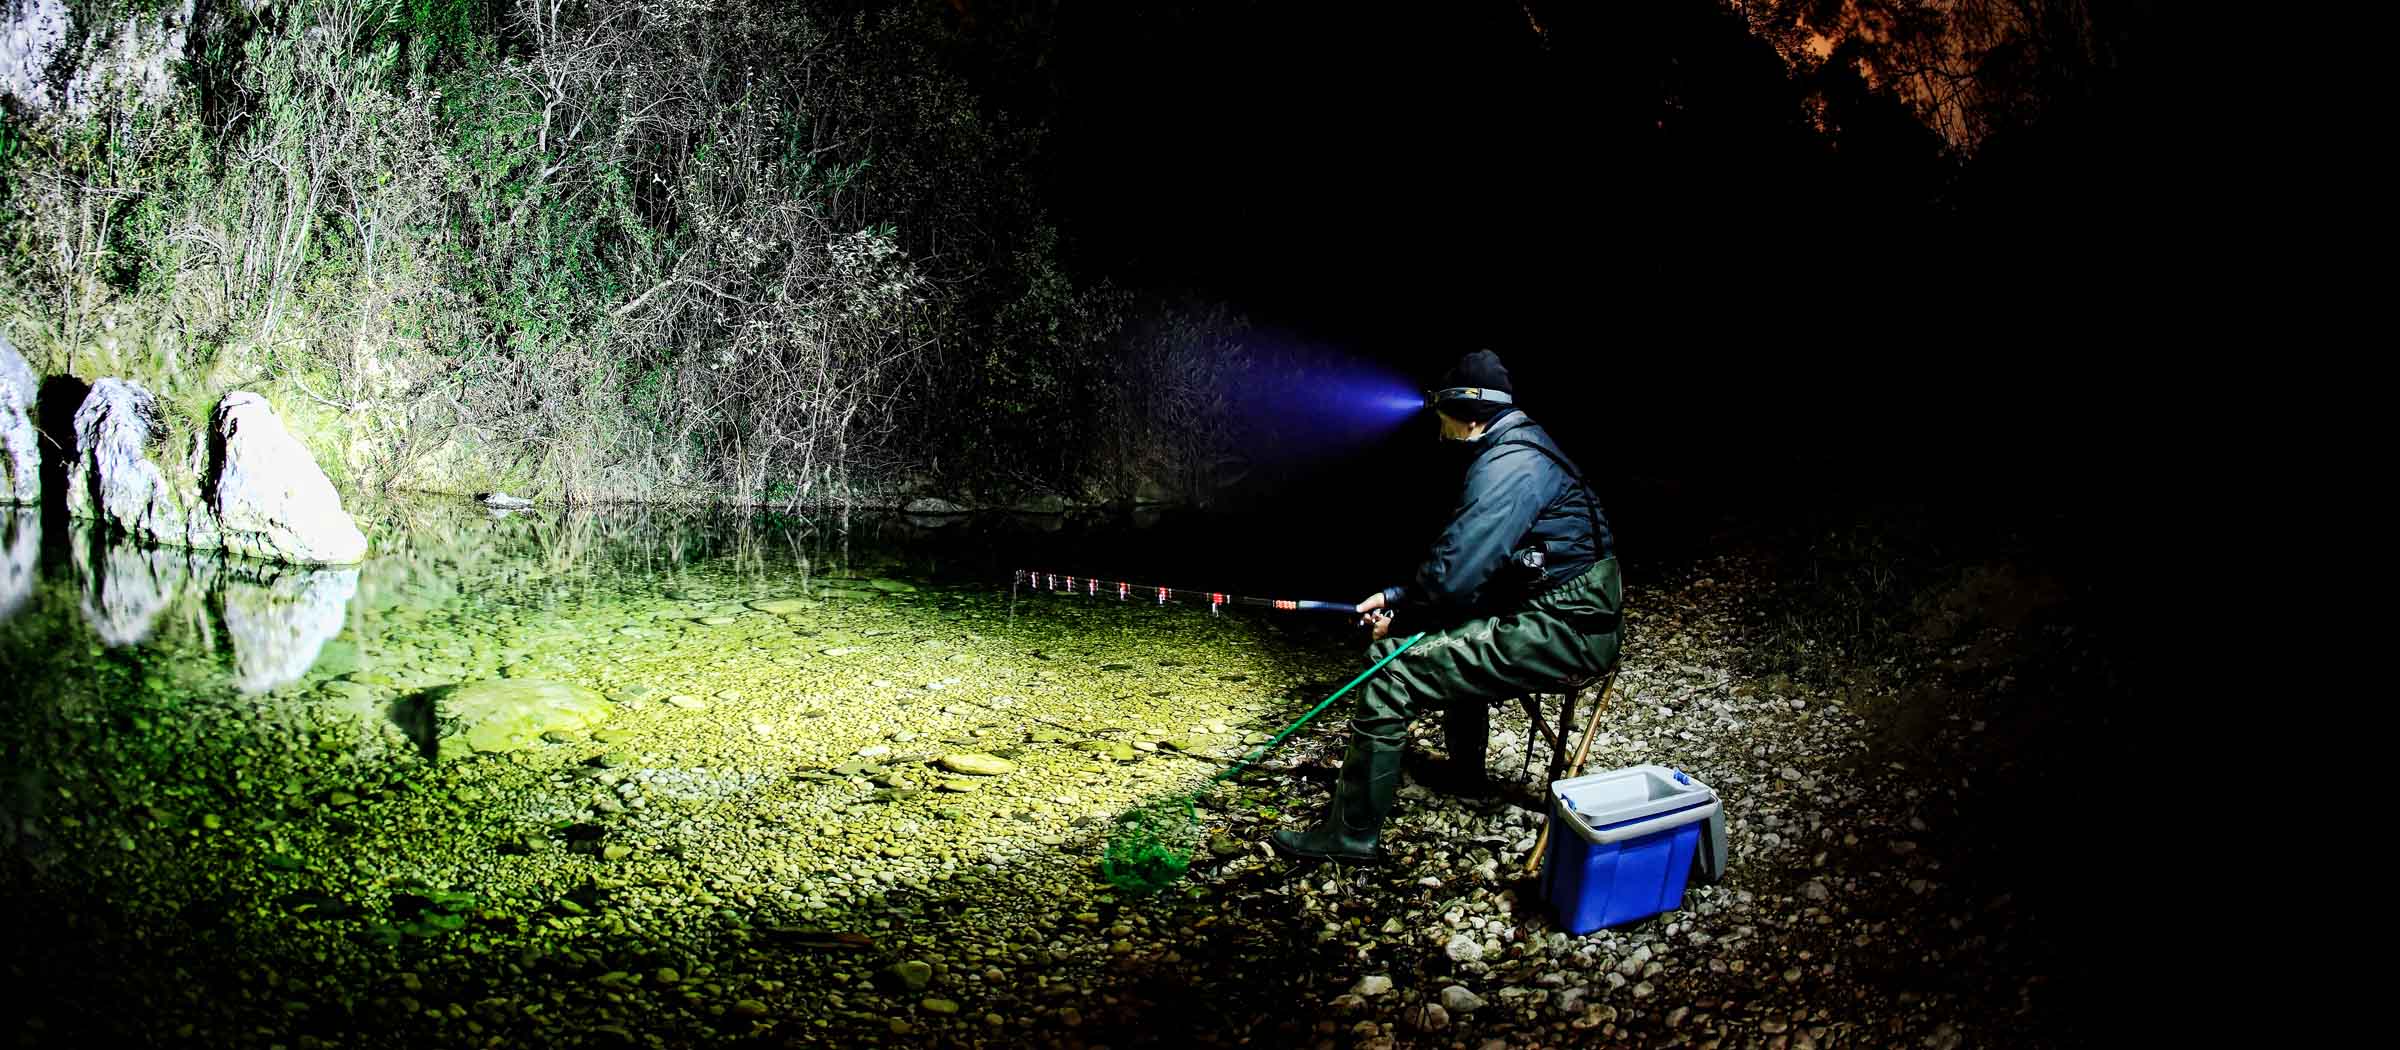 Led Lights Outdoor Fishing, Night Fishing Light, Fishing Headlight